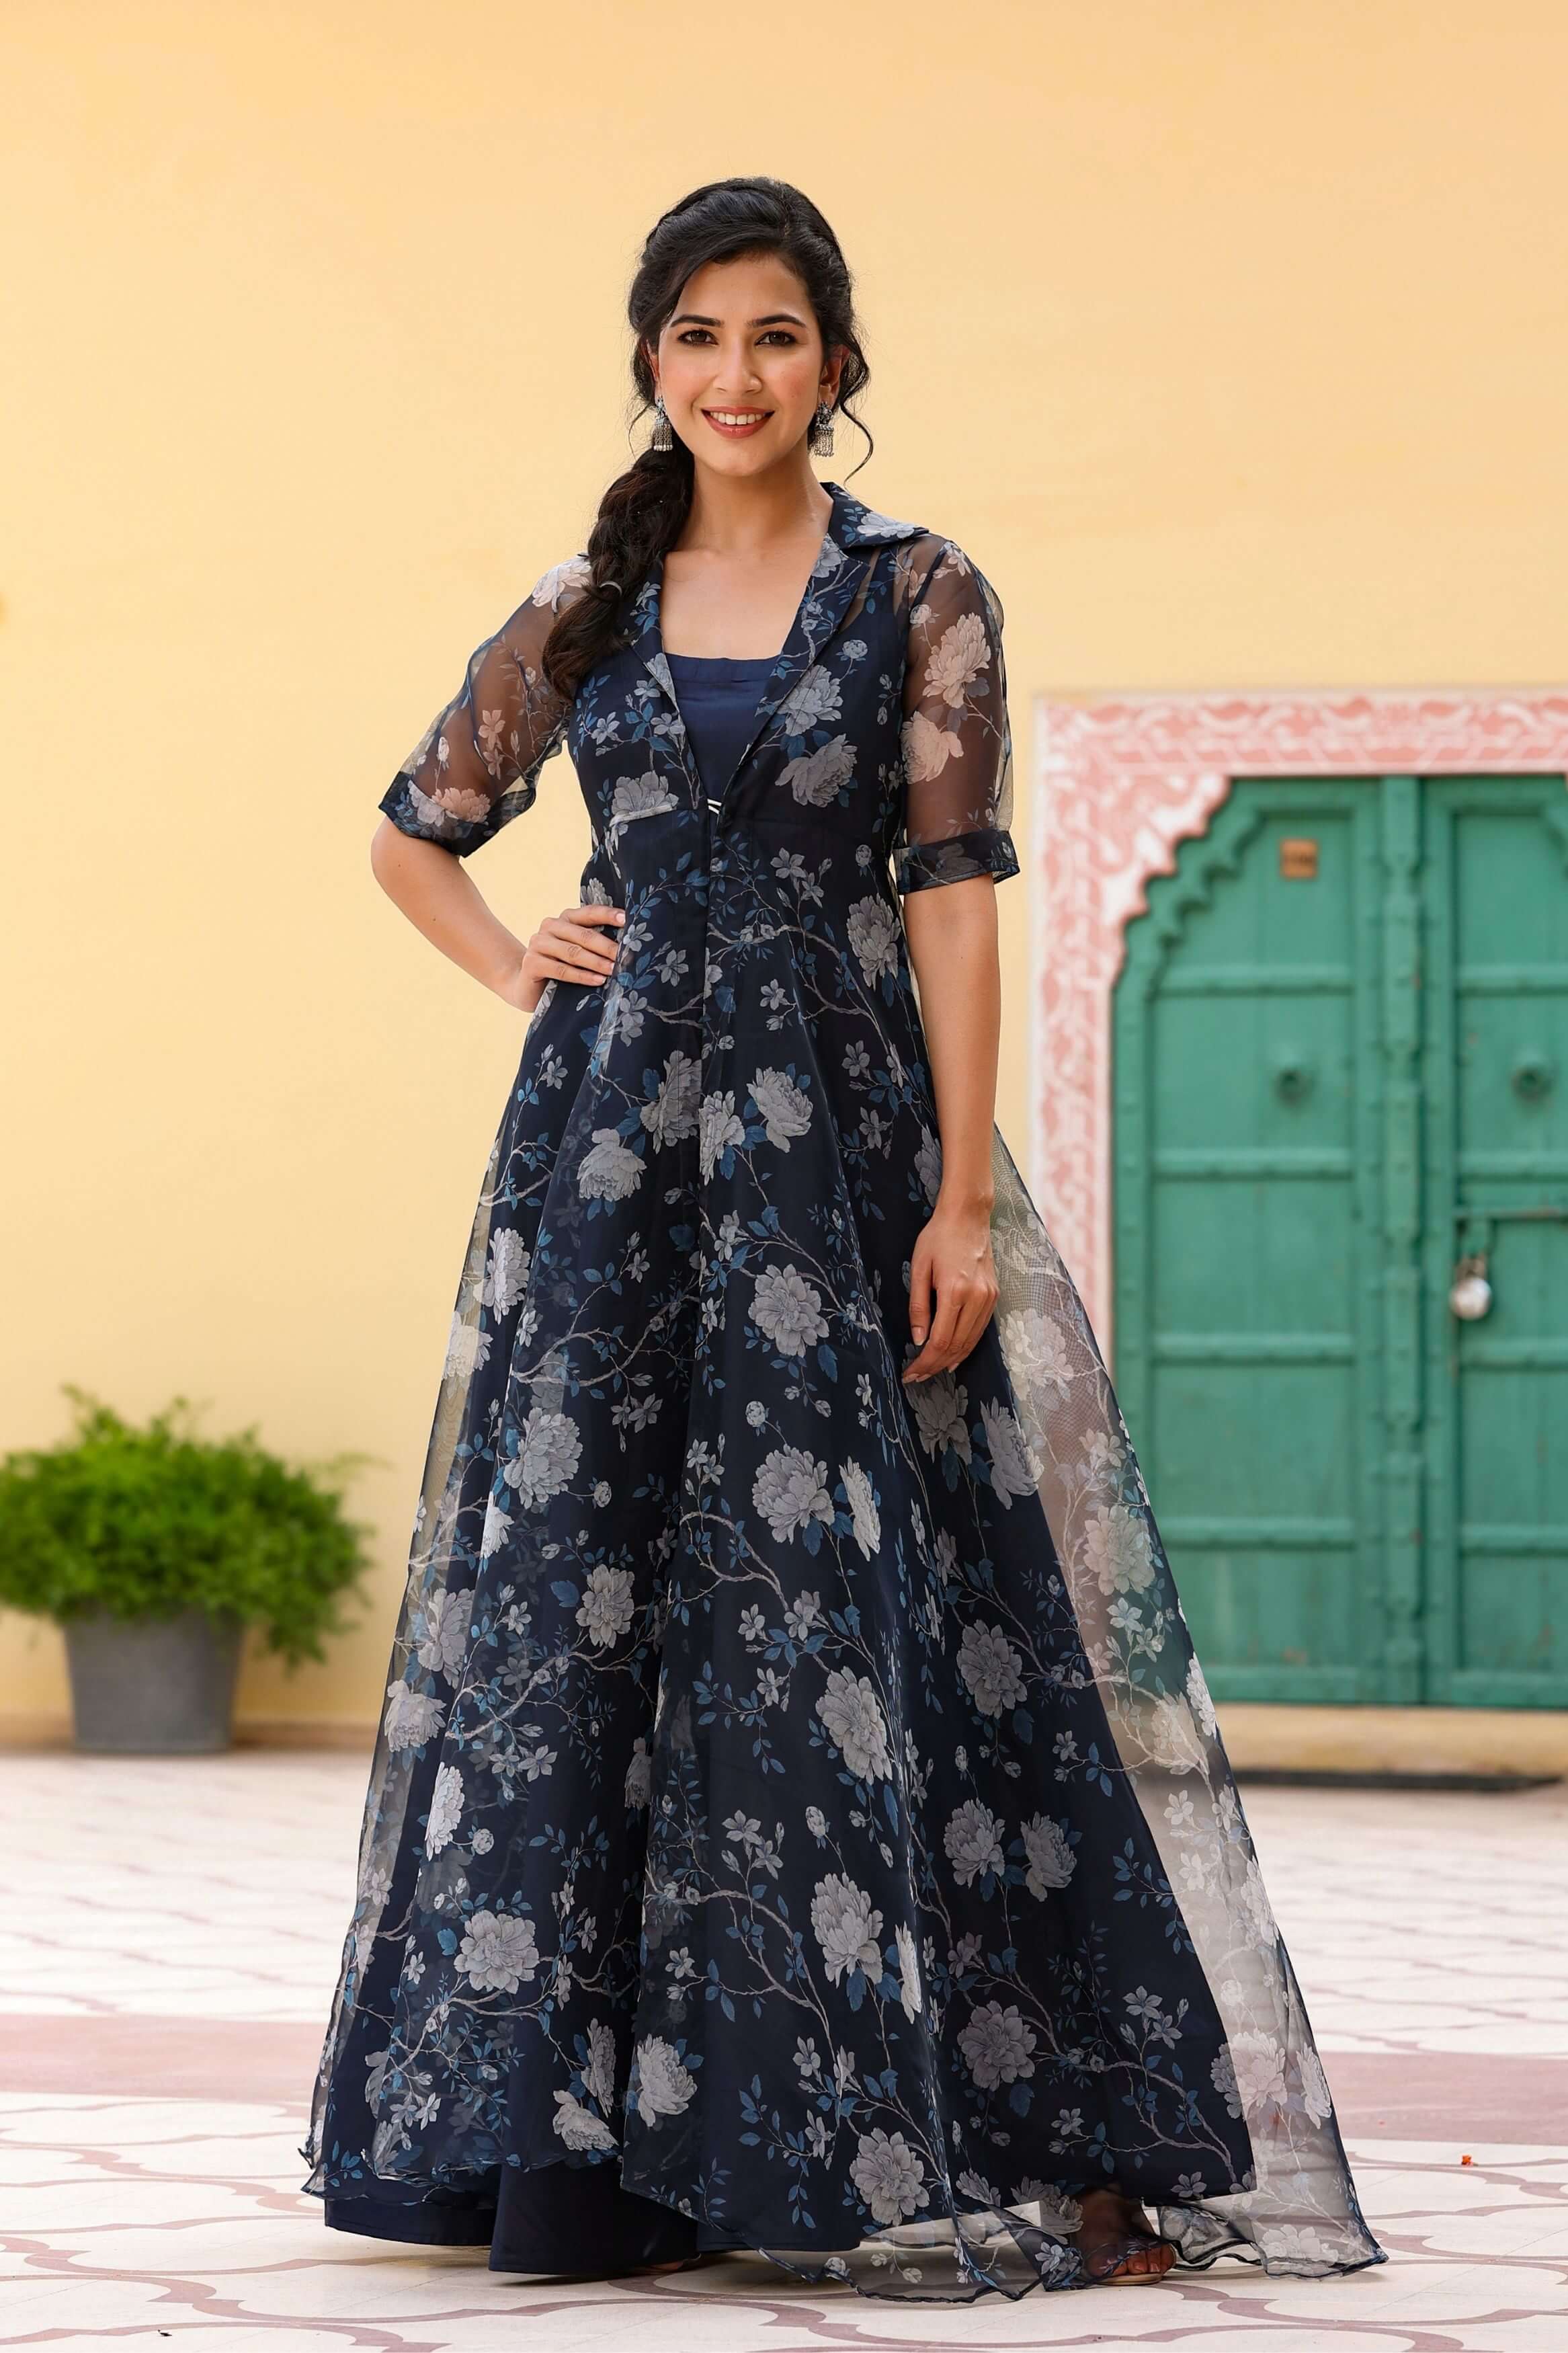 Designer Suits Online, Indian Salwar Kameez, Designer Dresses - #Malaika  #Arora #Khan #Magenta #Georgette #Designer #Anarkali Suit Product Code:  71038 Price: USD 103 Shop Now @  http://www.indianclothstore.com/productdetail.aspx?pid=71038 | Facebook